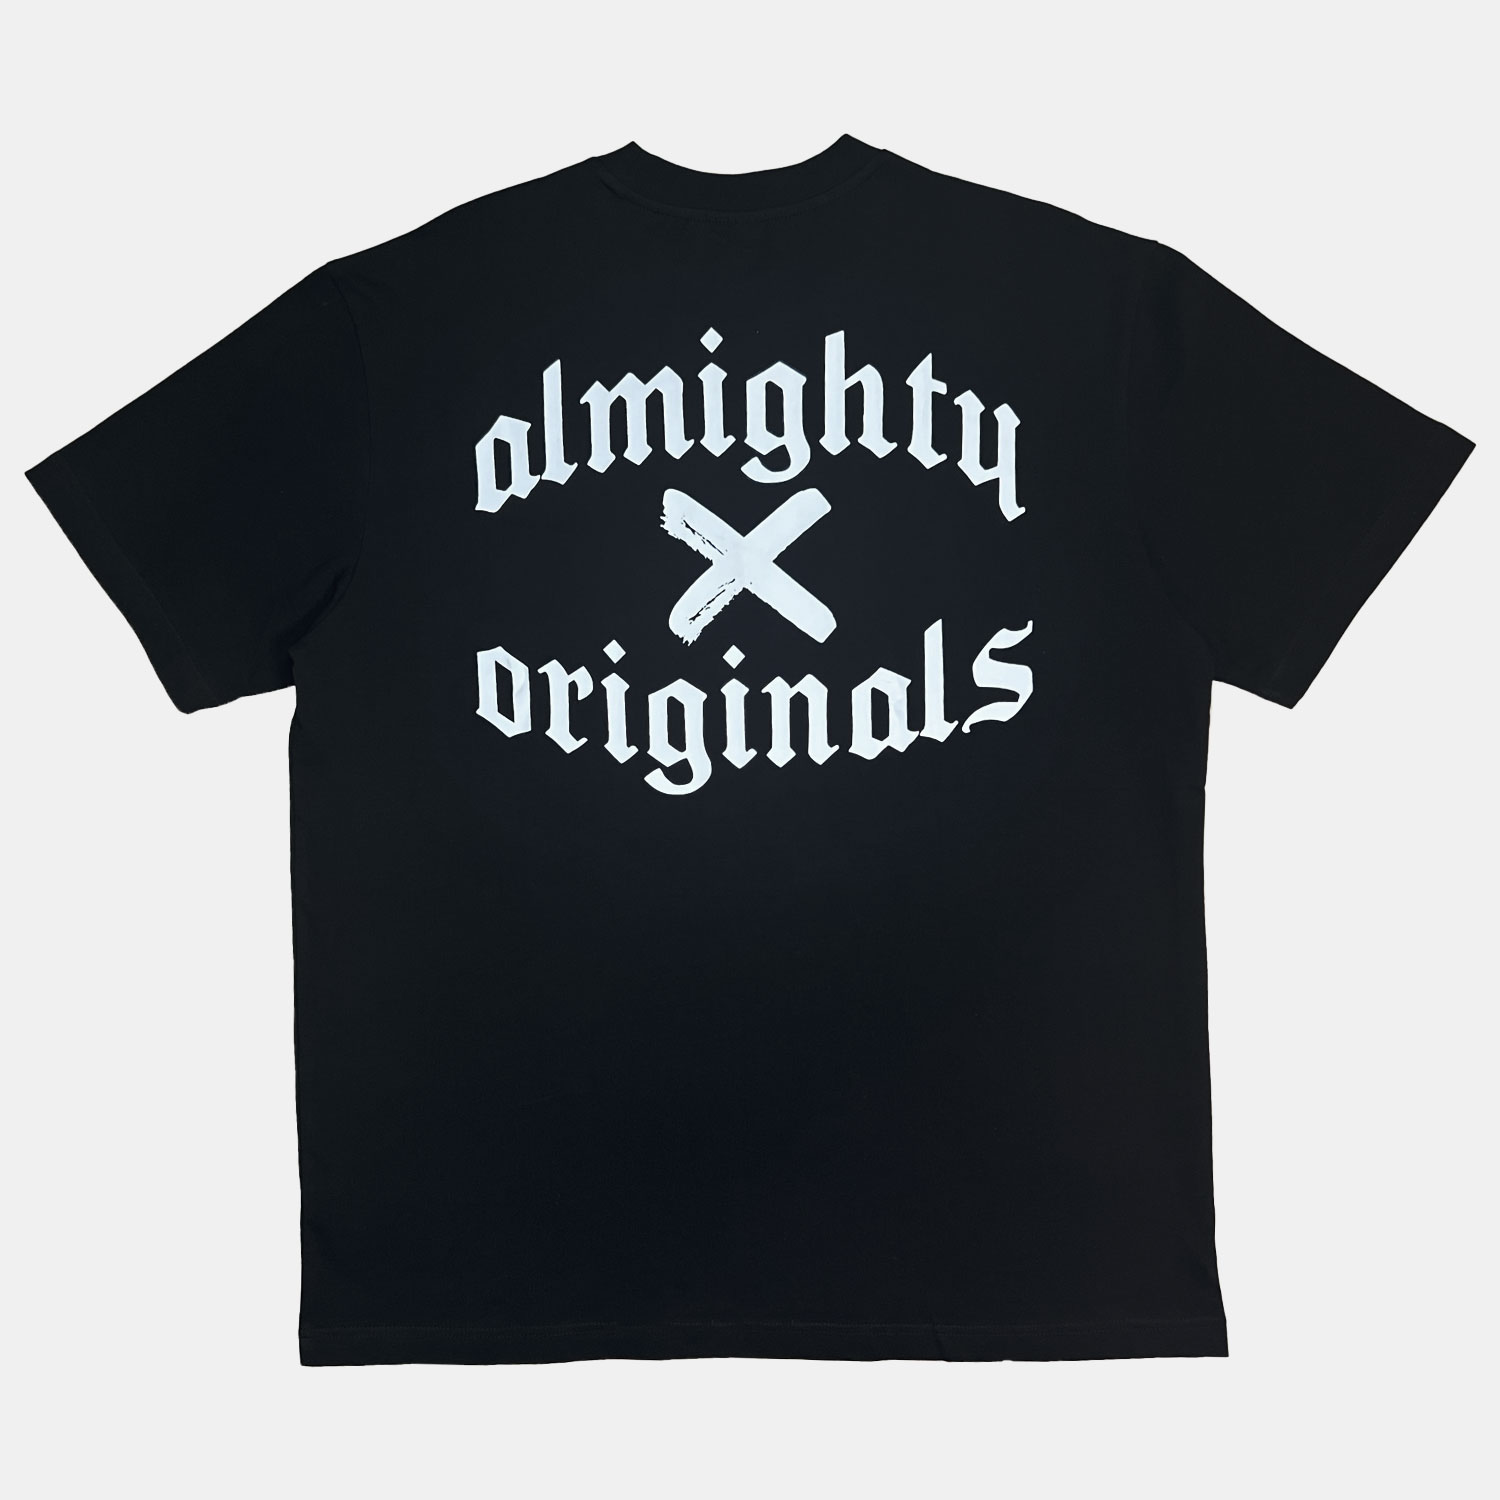 Shop - The Almighty Originals